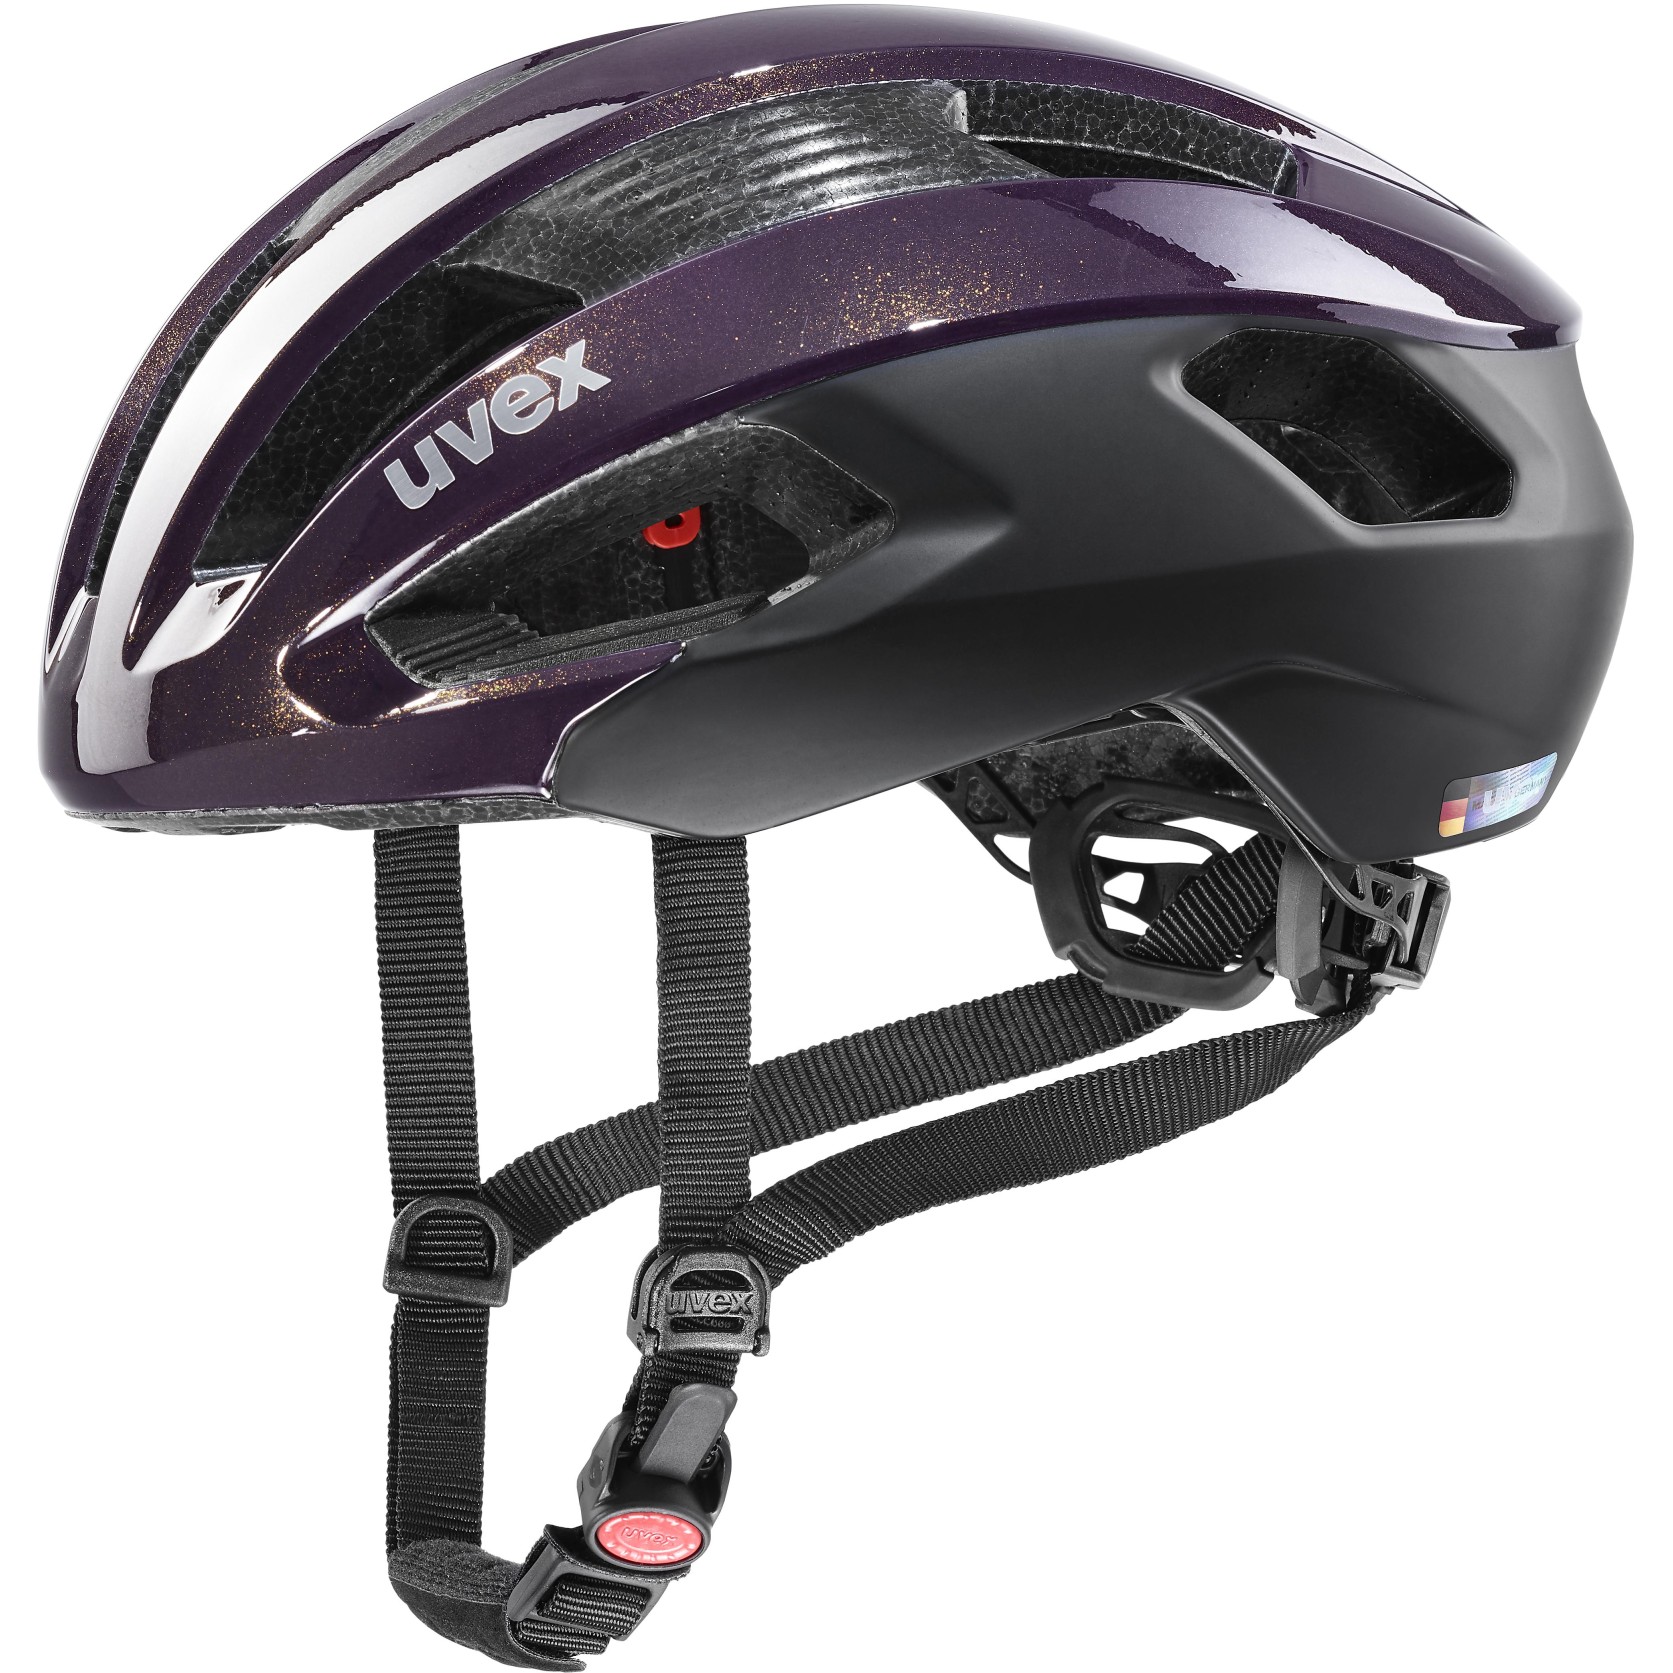 Picture of Uvex rise cc Helmet - plum-black mat